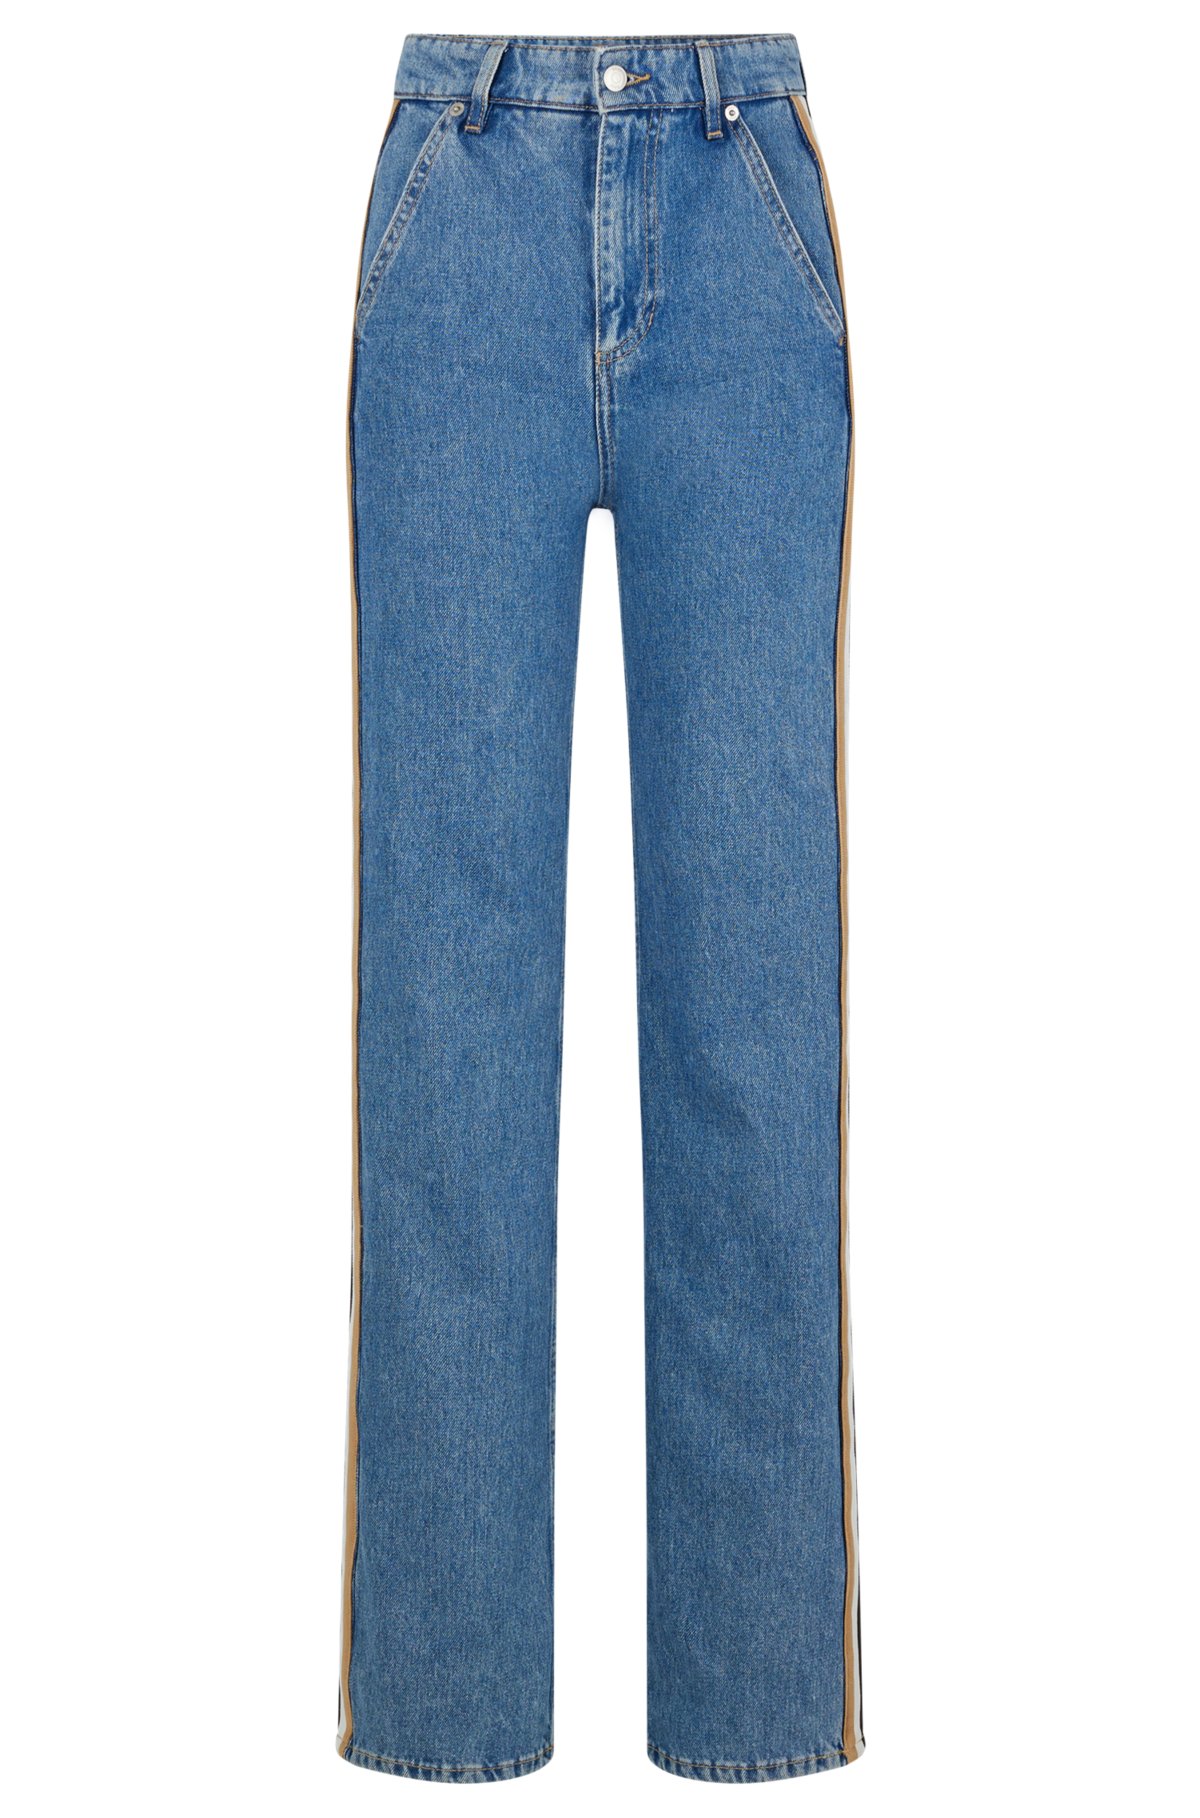 BOSS - Regular-fit biker-style jeans in mid-blue denim